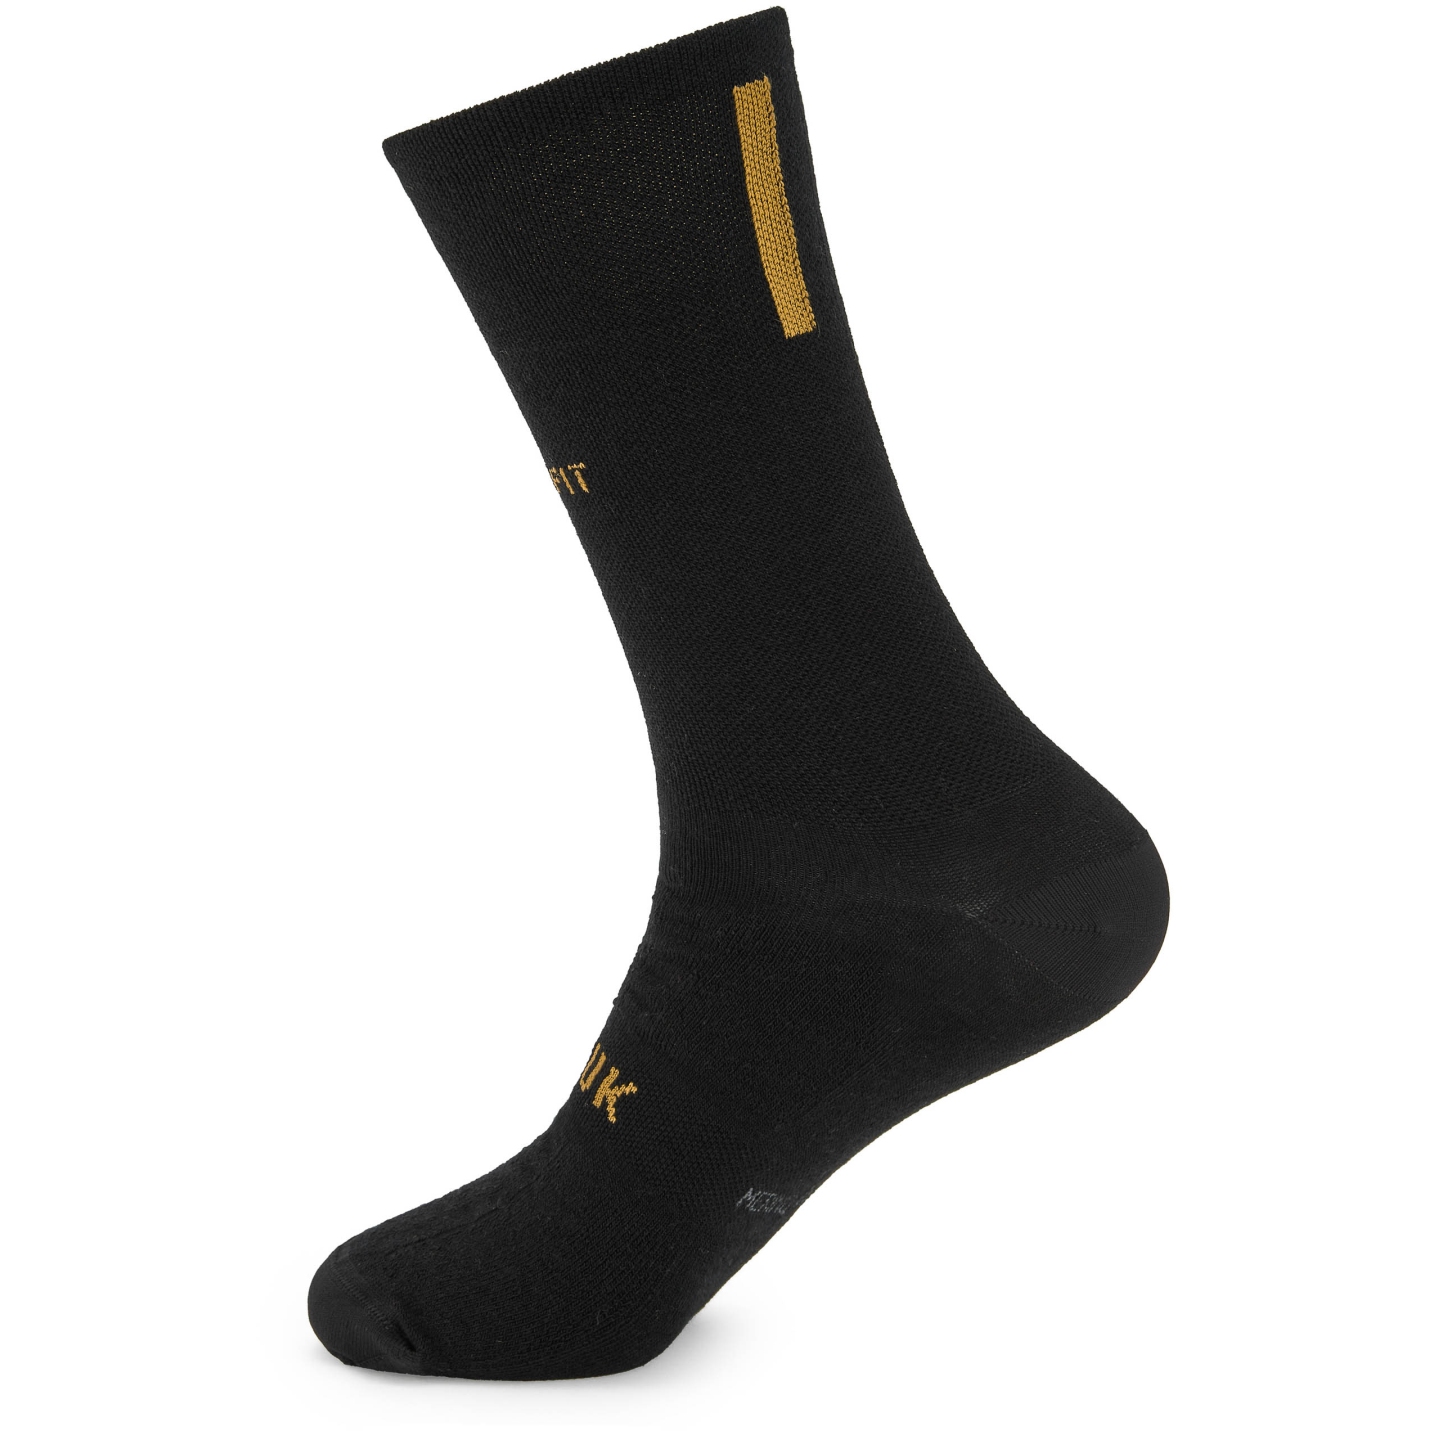 Produktbild von Spiuk PROFIT Winter Socken Lang - schwarz